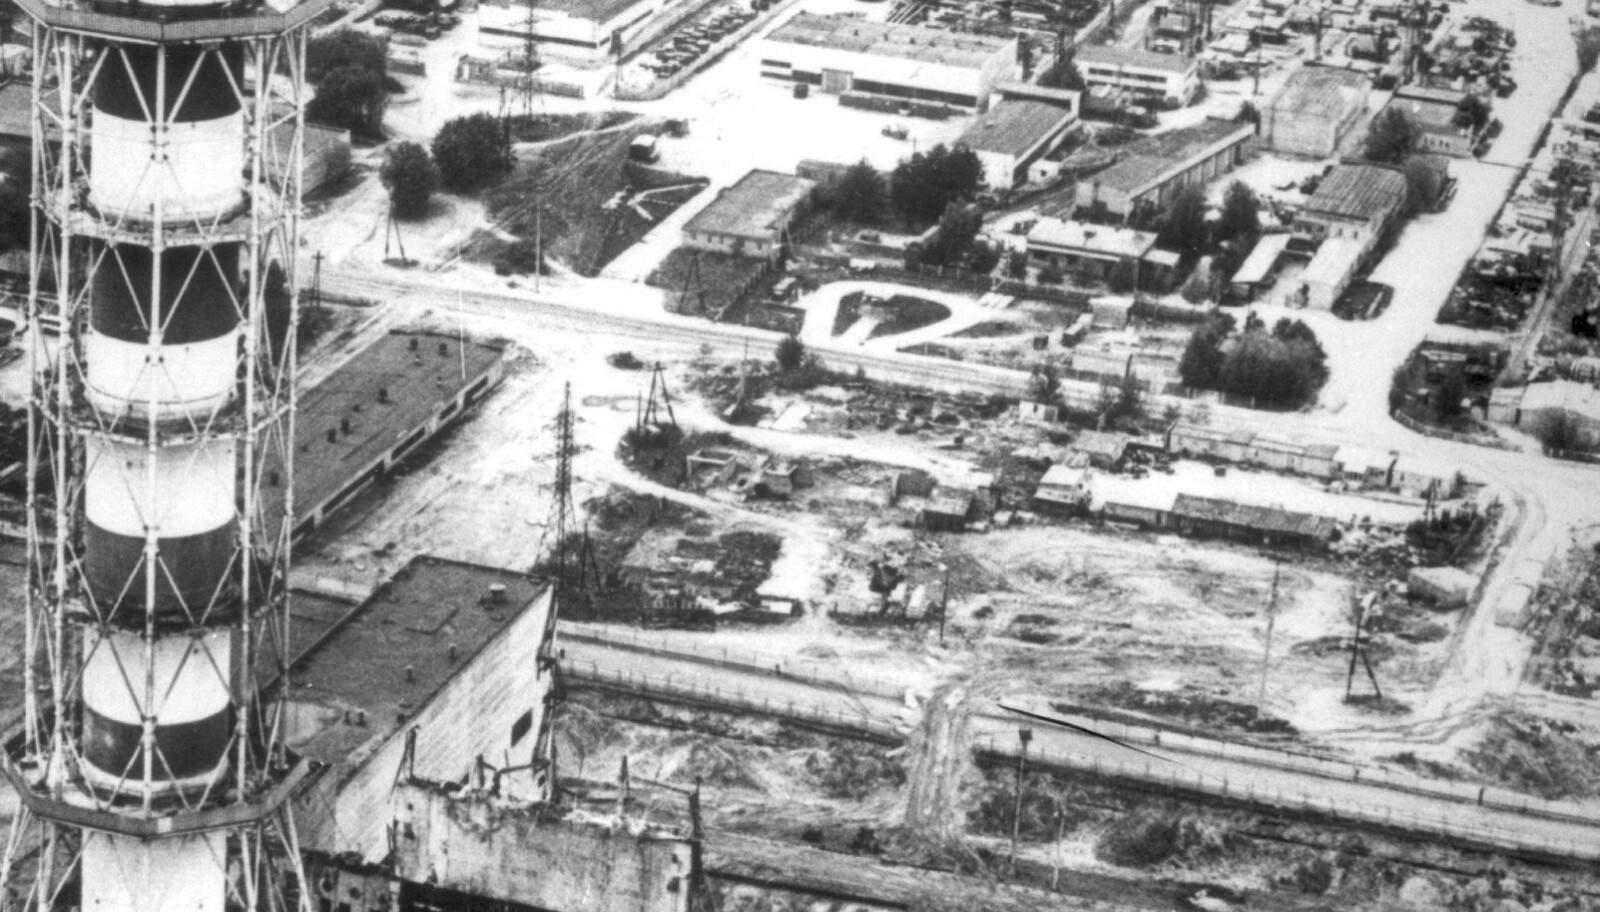 <b>KATASTROFE:</b> 26. april 1986 er Tsjernobyl-ulykken et faktum. Reaktor 4 i atomkraftverket eksploderer. Ulykken er blant de verste atomulykkene i historien.